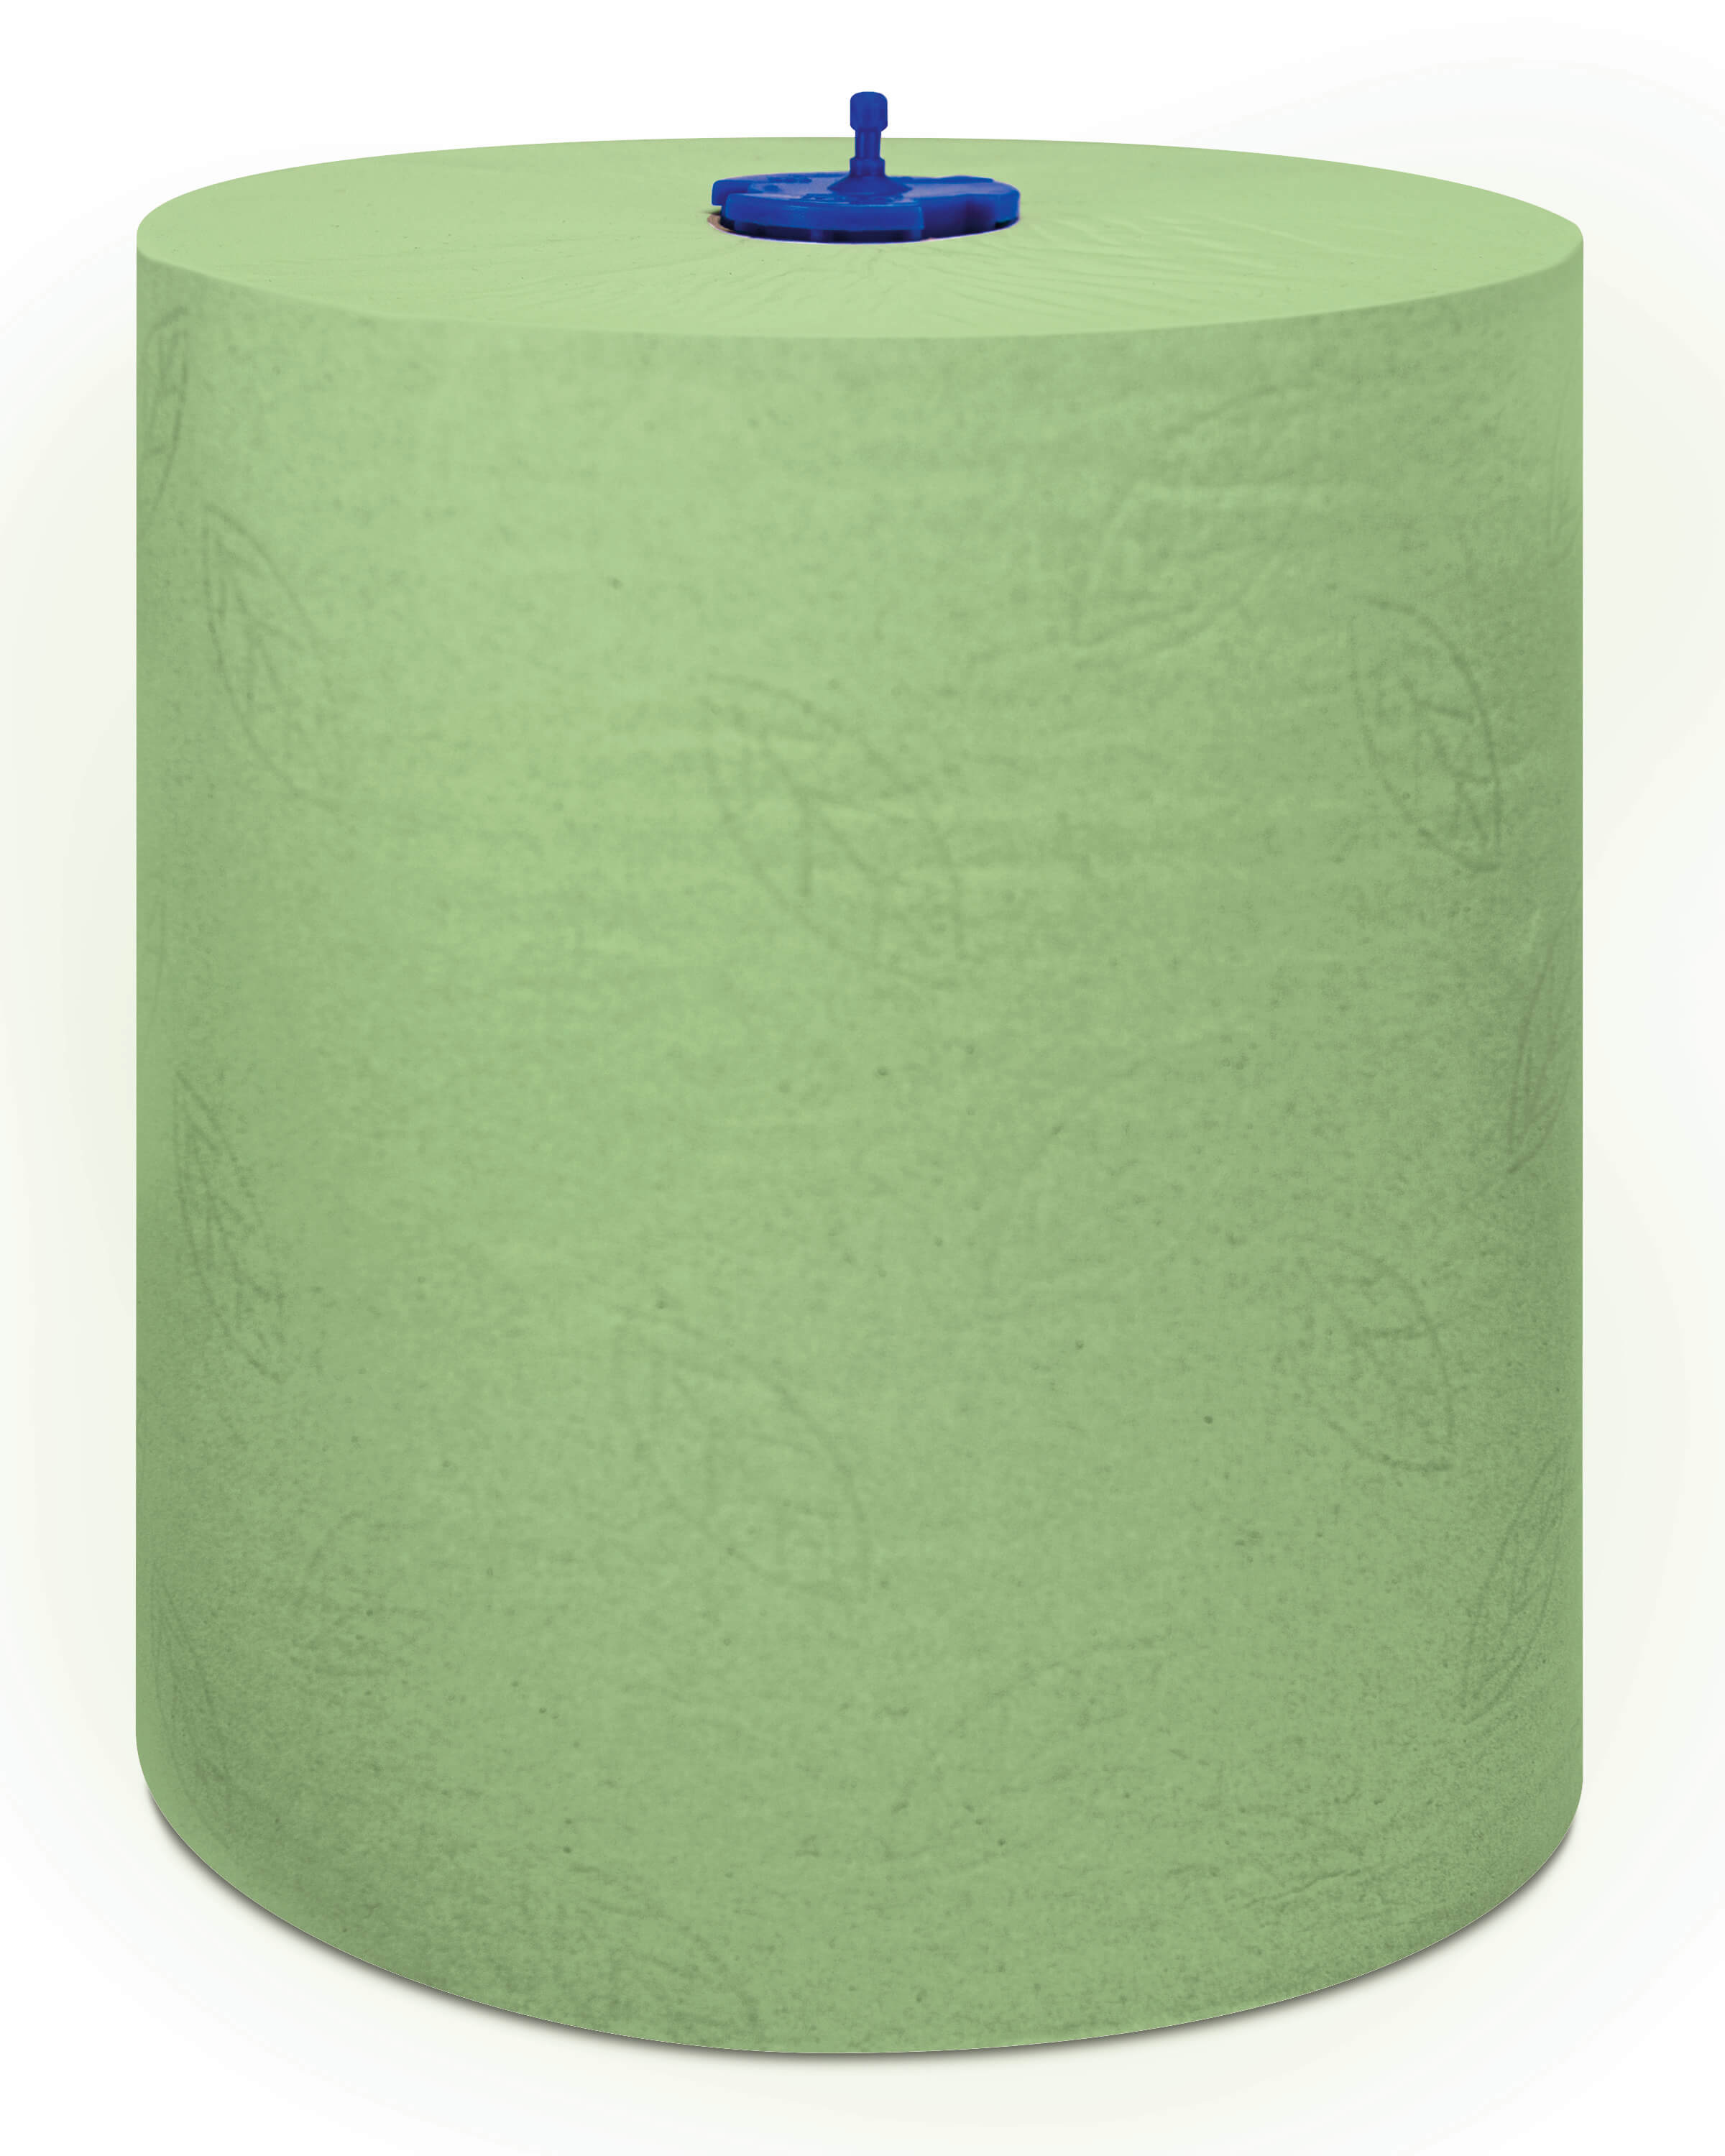 Бумажные двухслойные полотенца в рулонах Tork Matic® Advanced, 150м (зелёные)